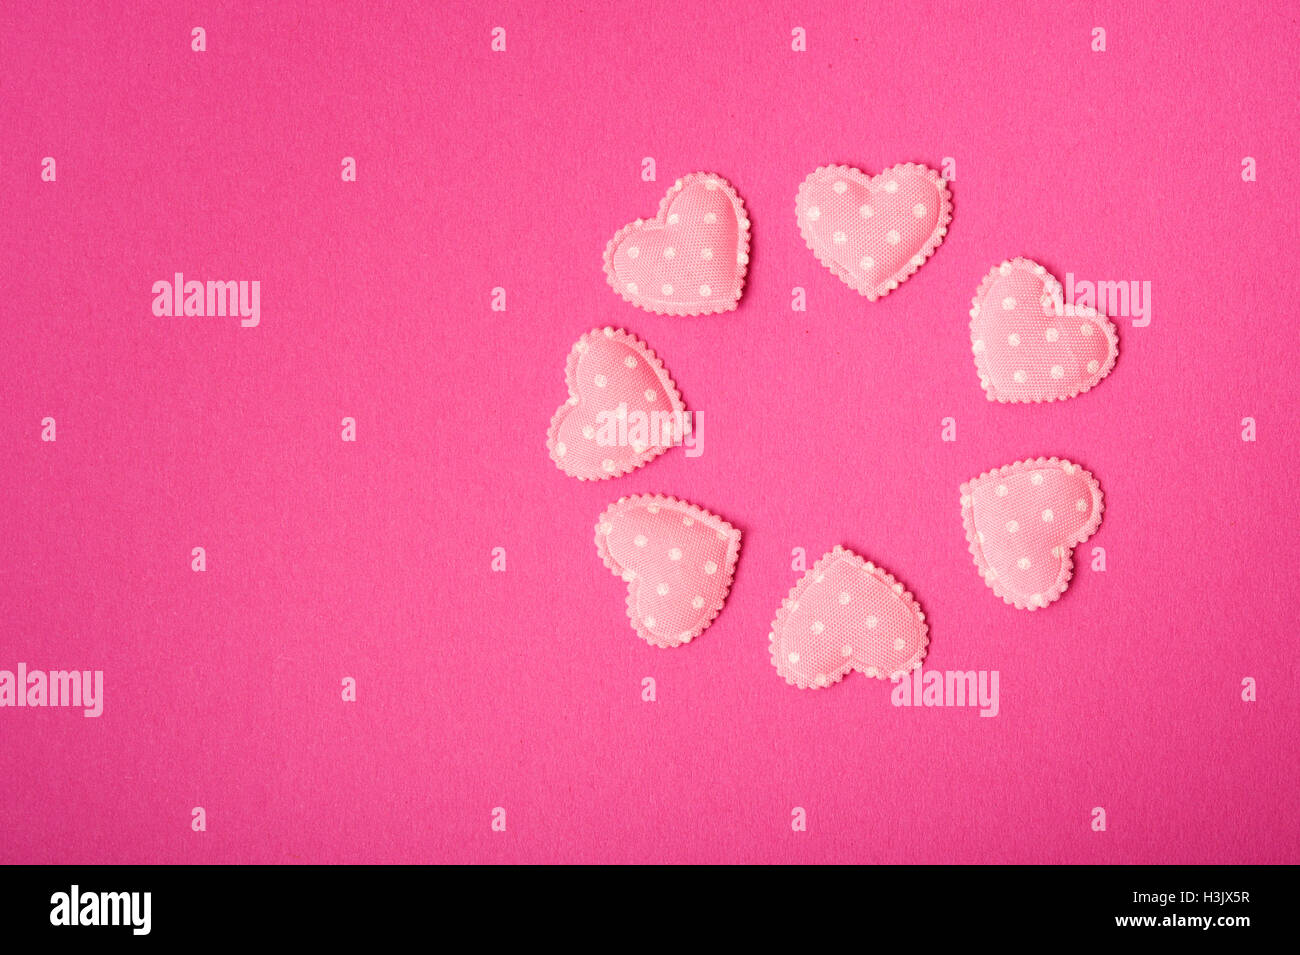 hearts confetti, love concept Stock Photo